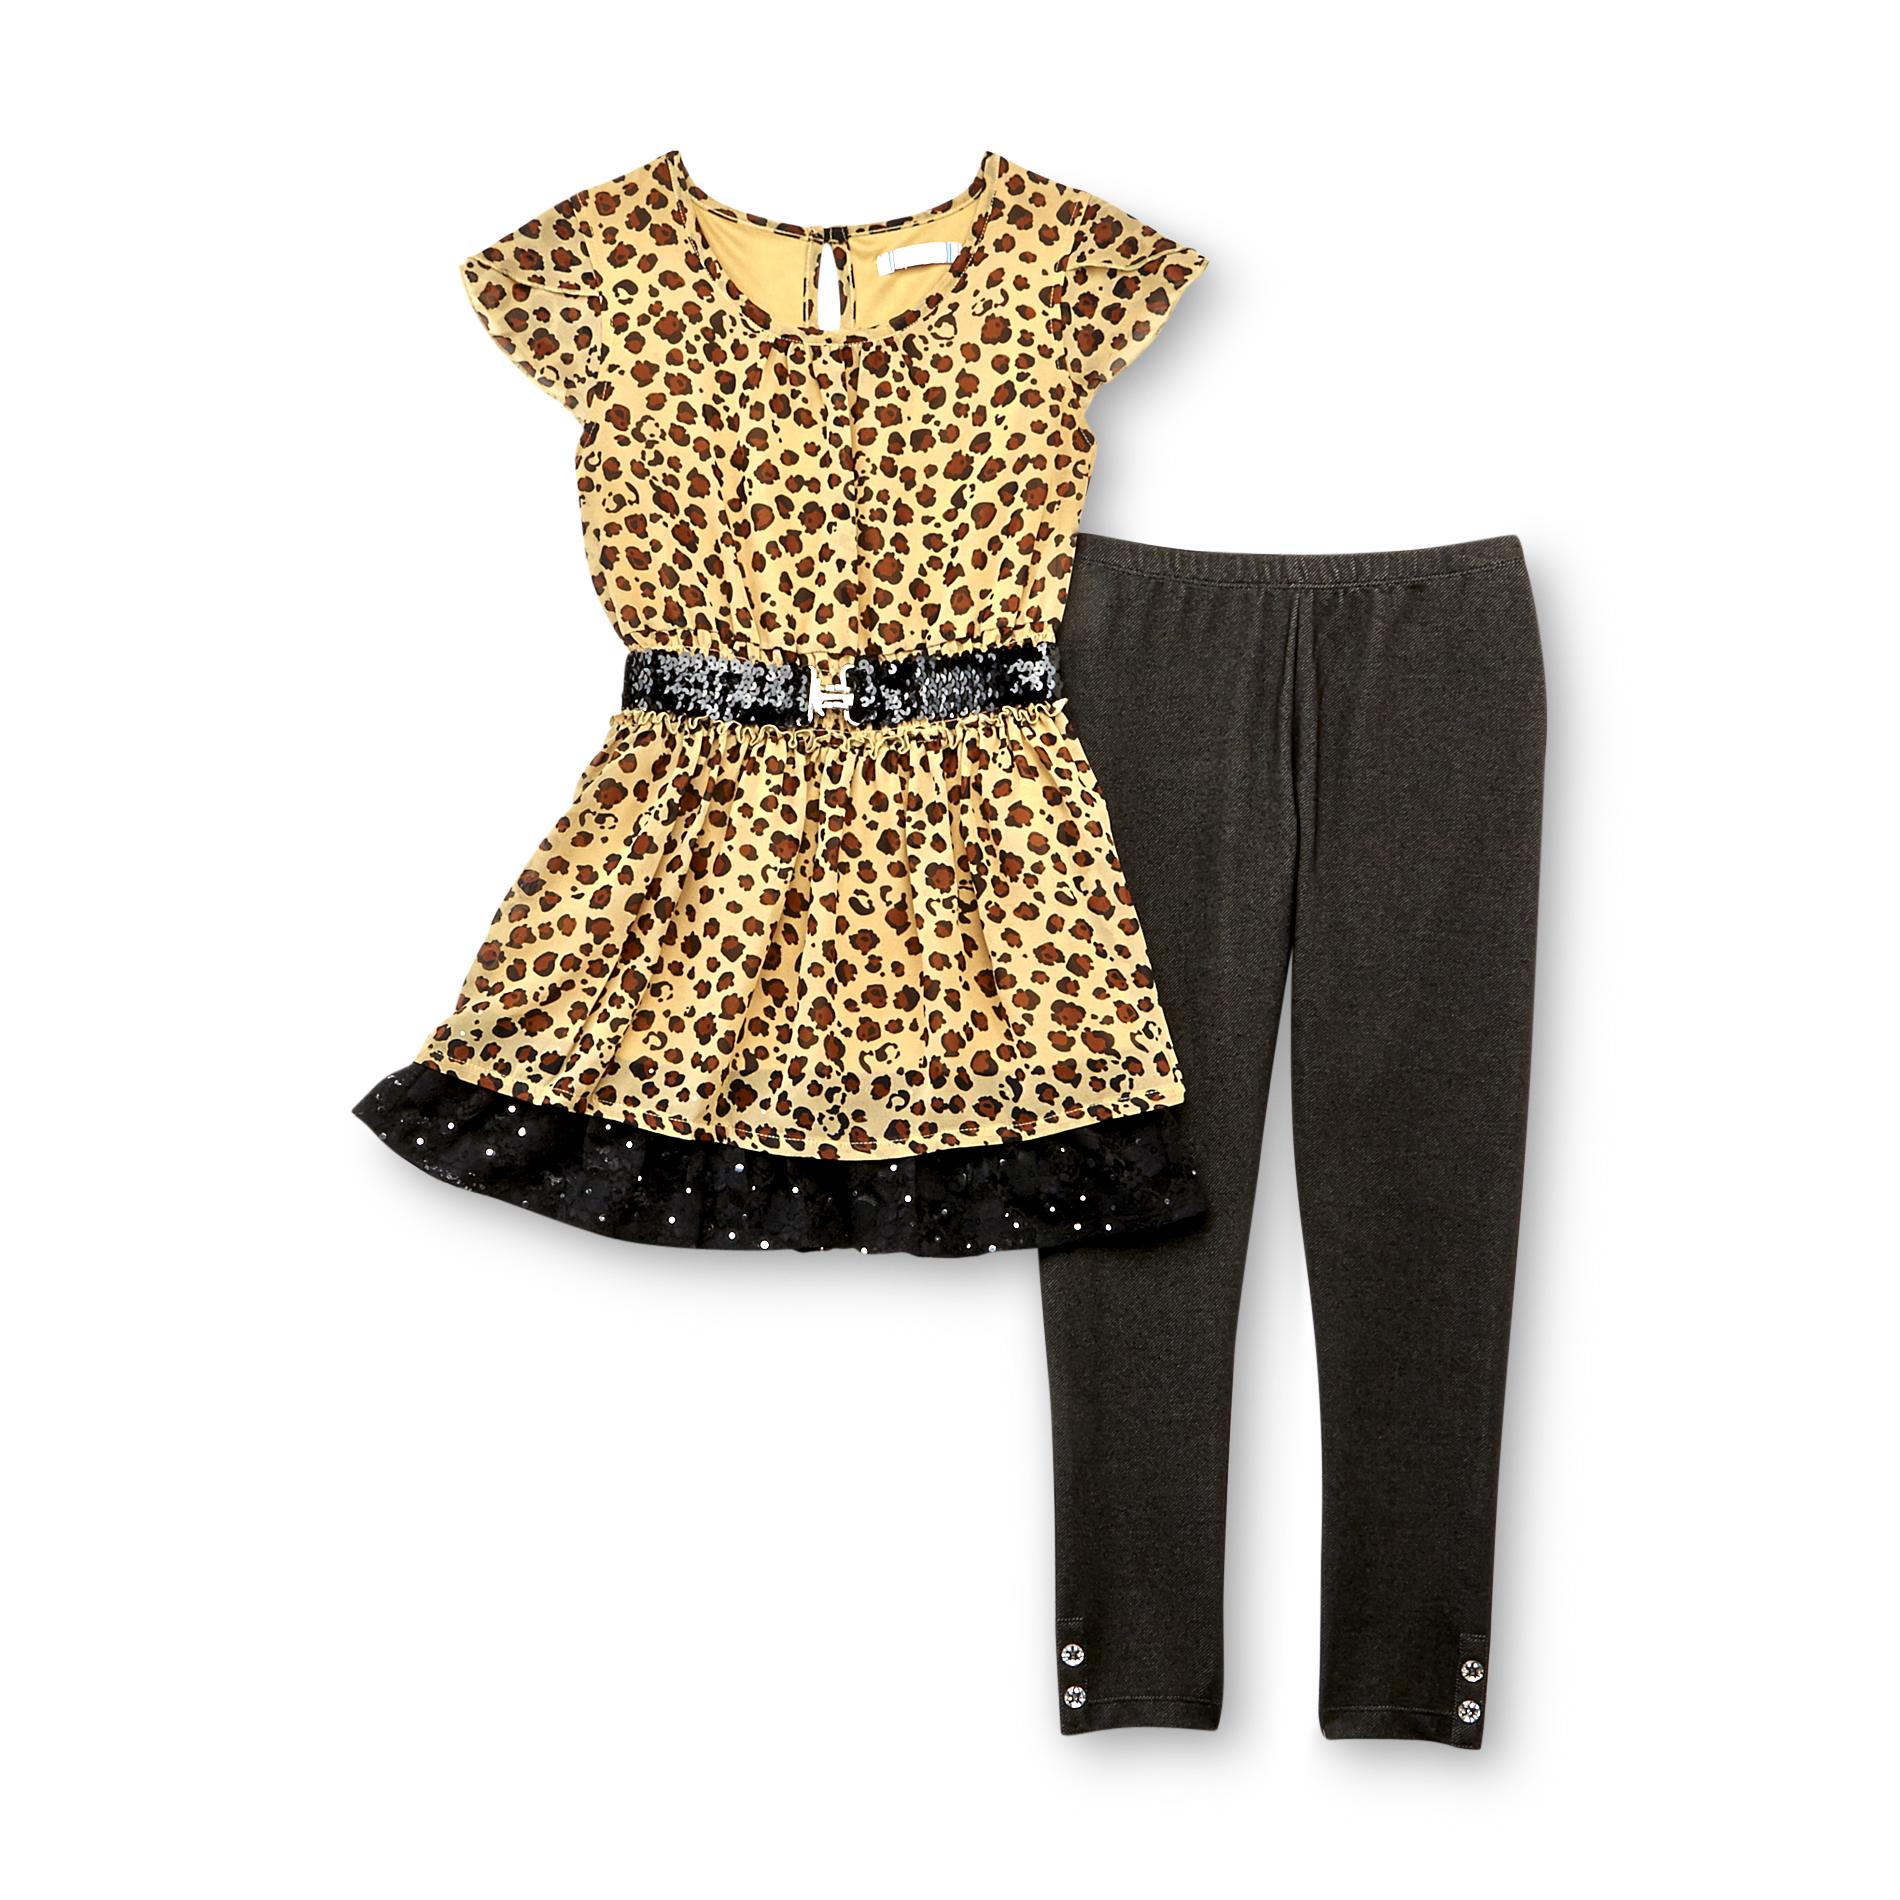 Piper Girl's Belted Dress & Leggings - Cheetah Print